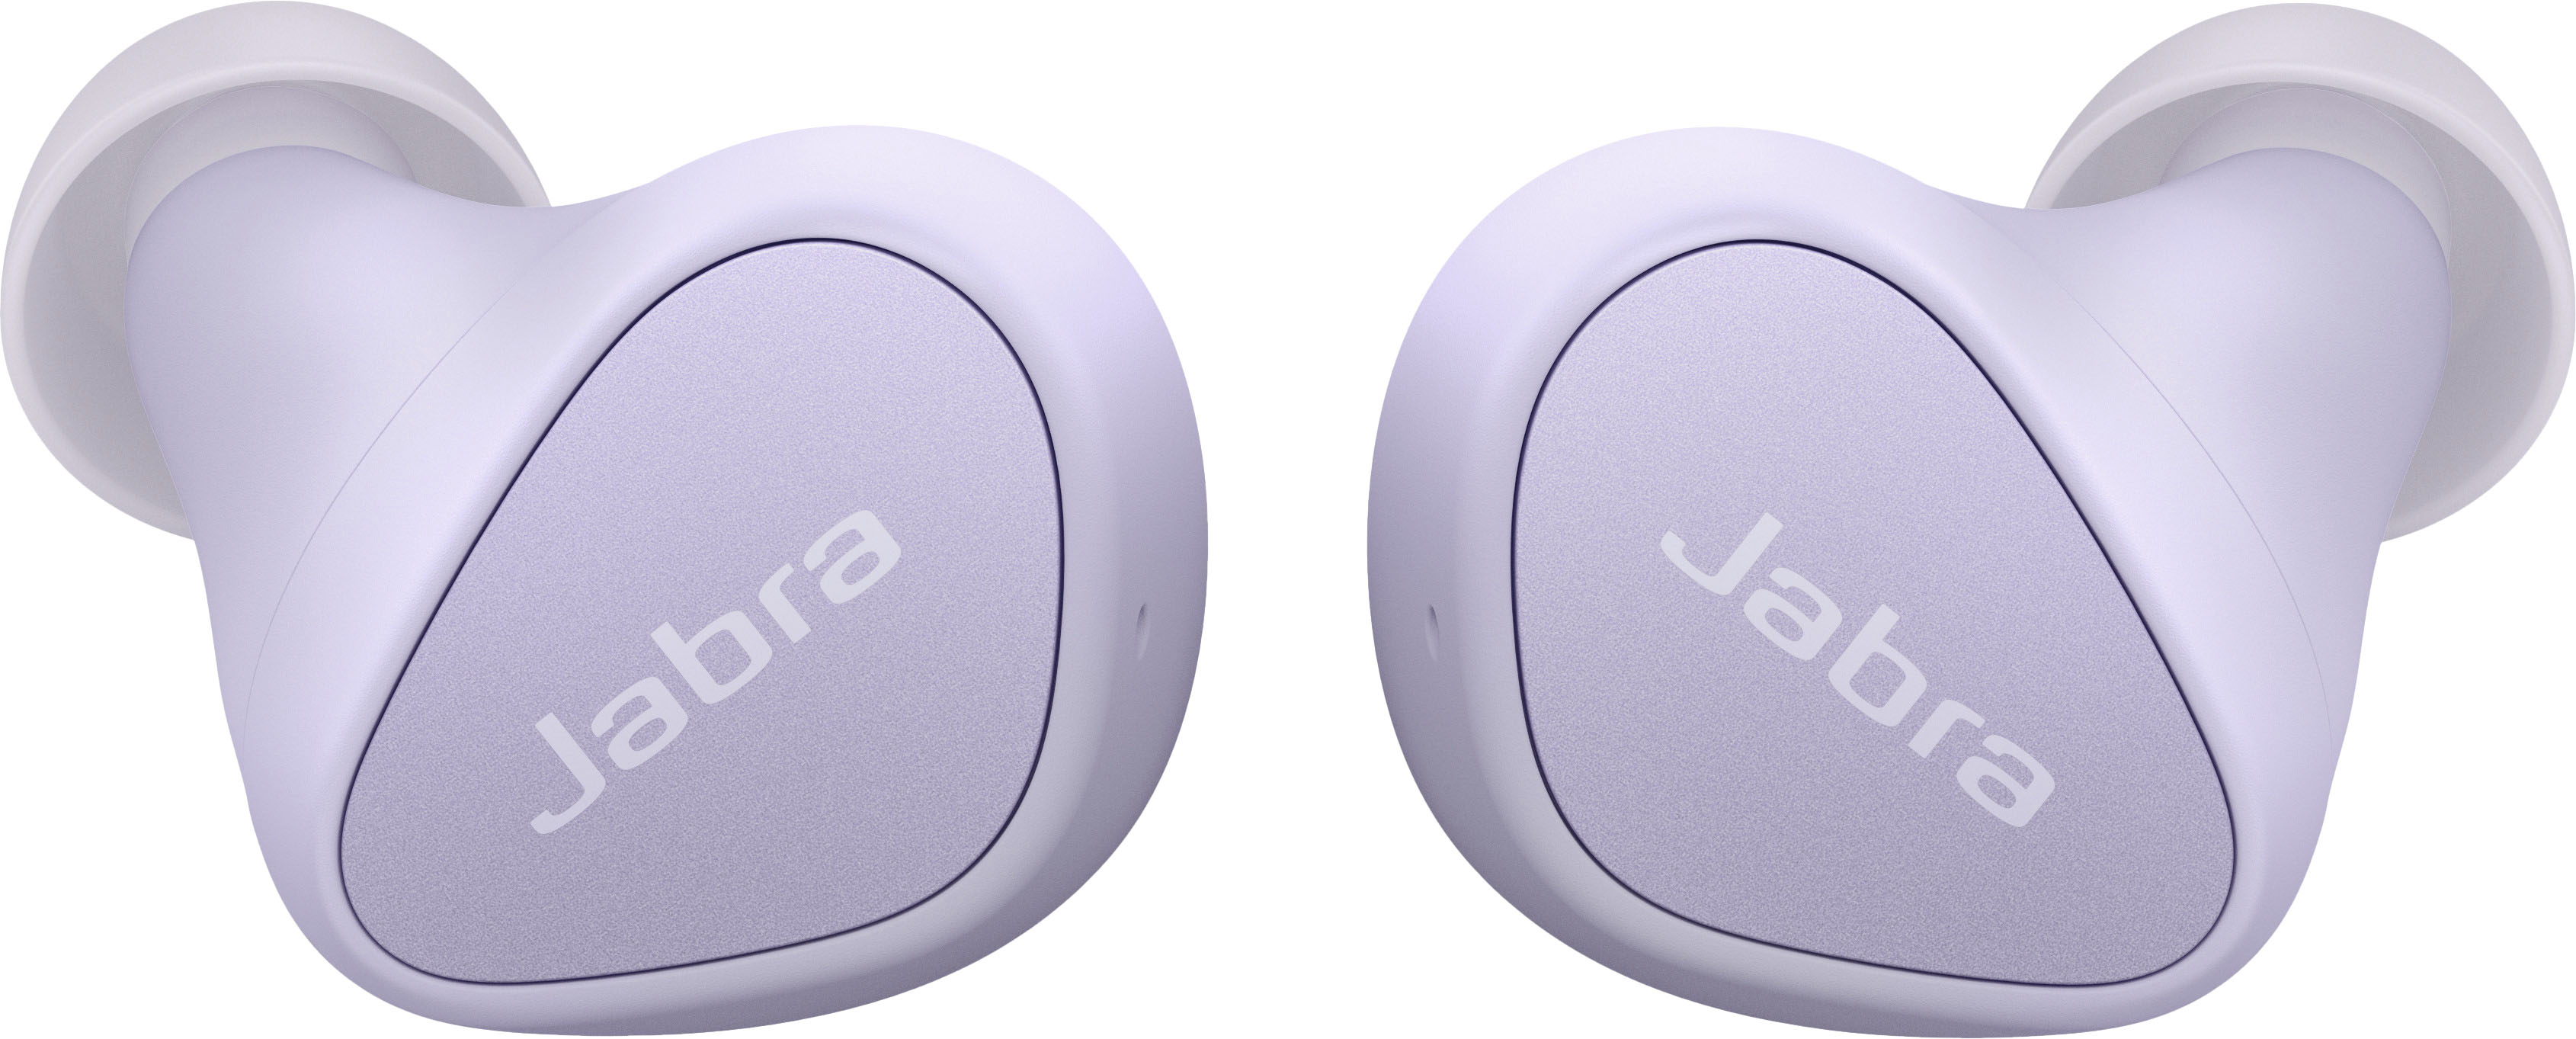 Jabra Elite 3 In-Ear Headphones Lilac 100-91410002-02 - Buy